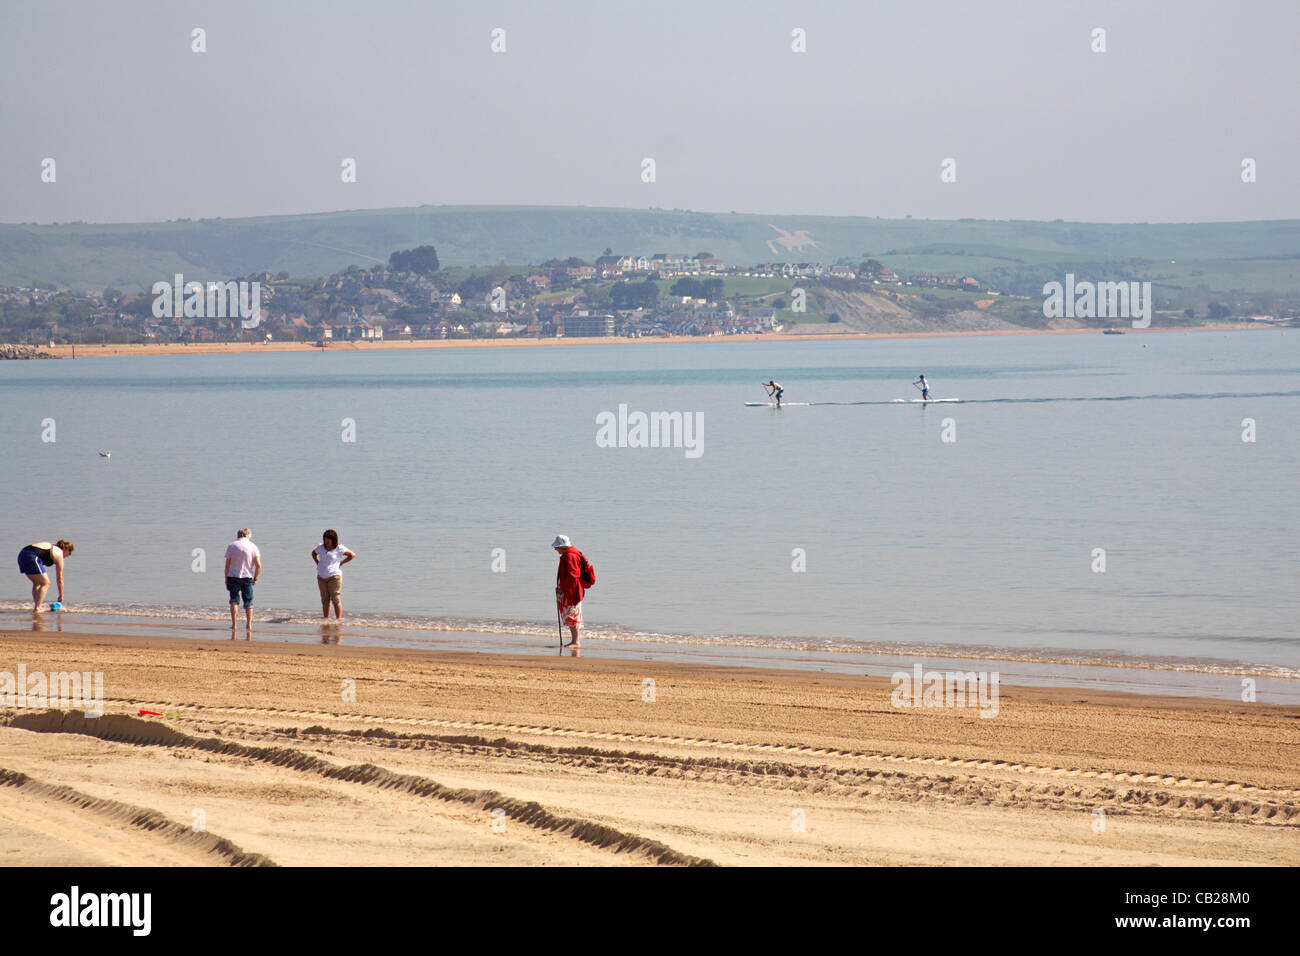 Weymouth, Regno Unito mercoledì 23 maggio 2012. rendendo la maggior parte del tempo caldo come le temperature si elevano a Weymouth beach, REGNO UNITO Foto Stock